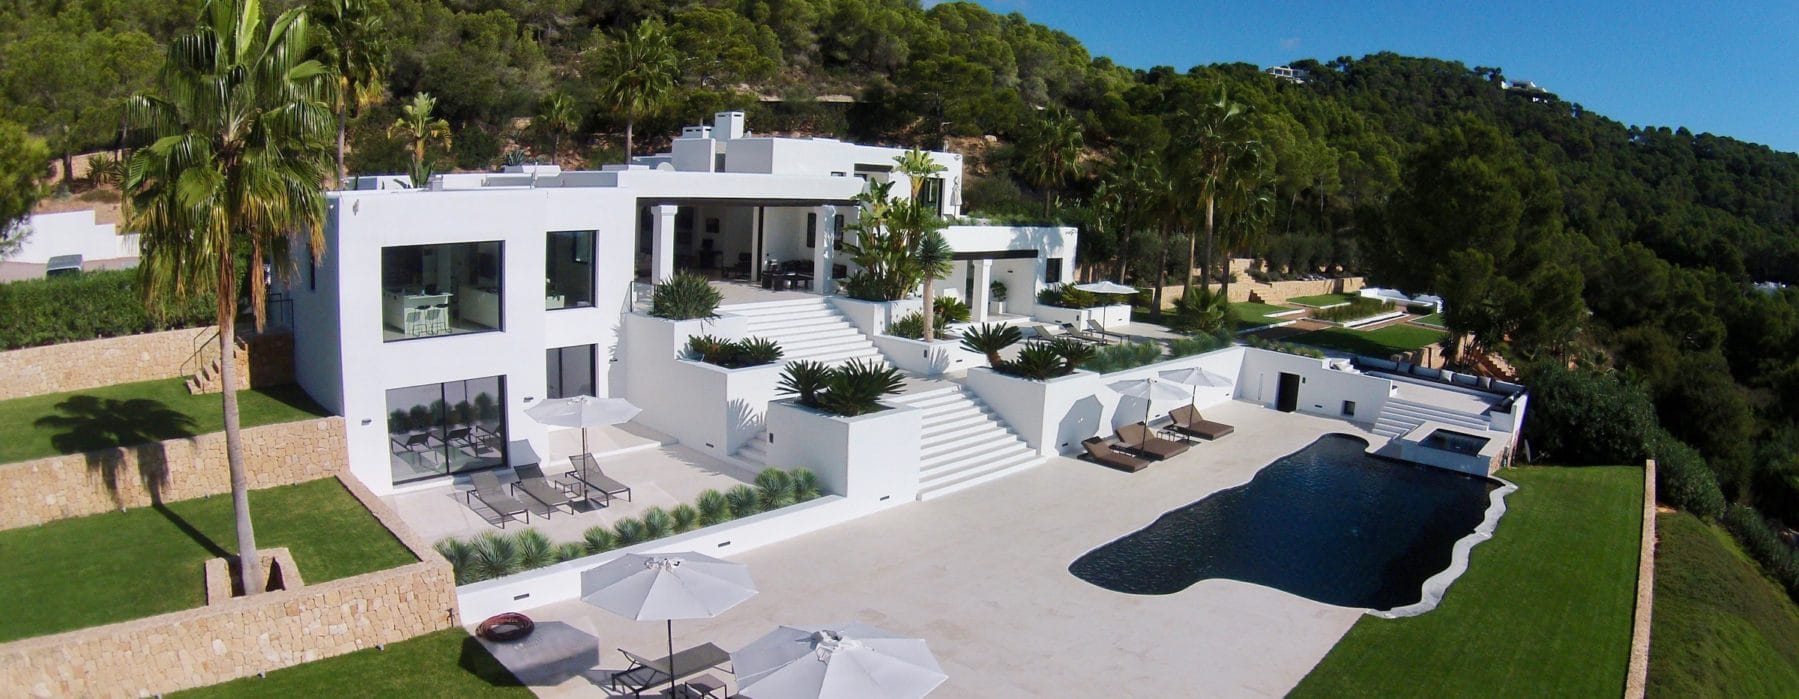 Villa mit 6 Schlafzimmern nahe Ibiza Stadt  zum mieten